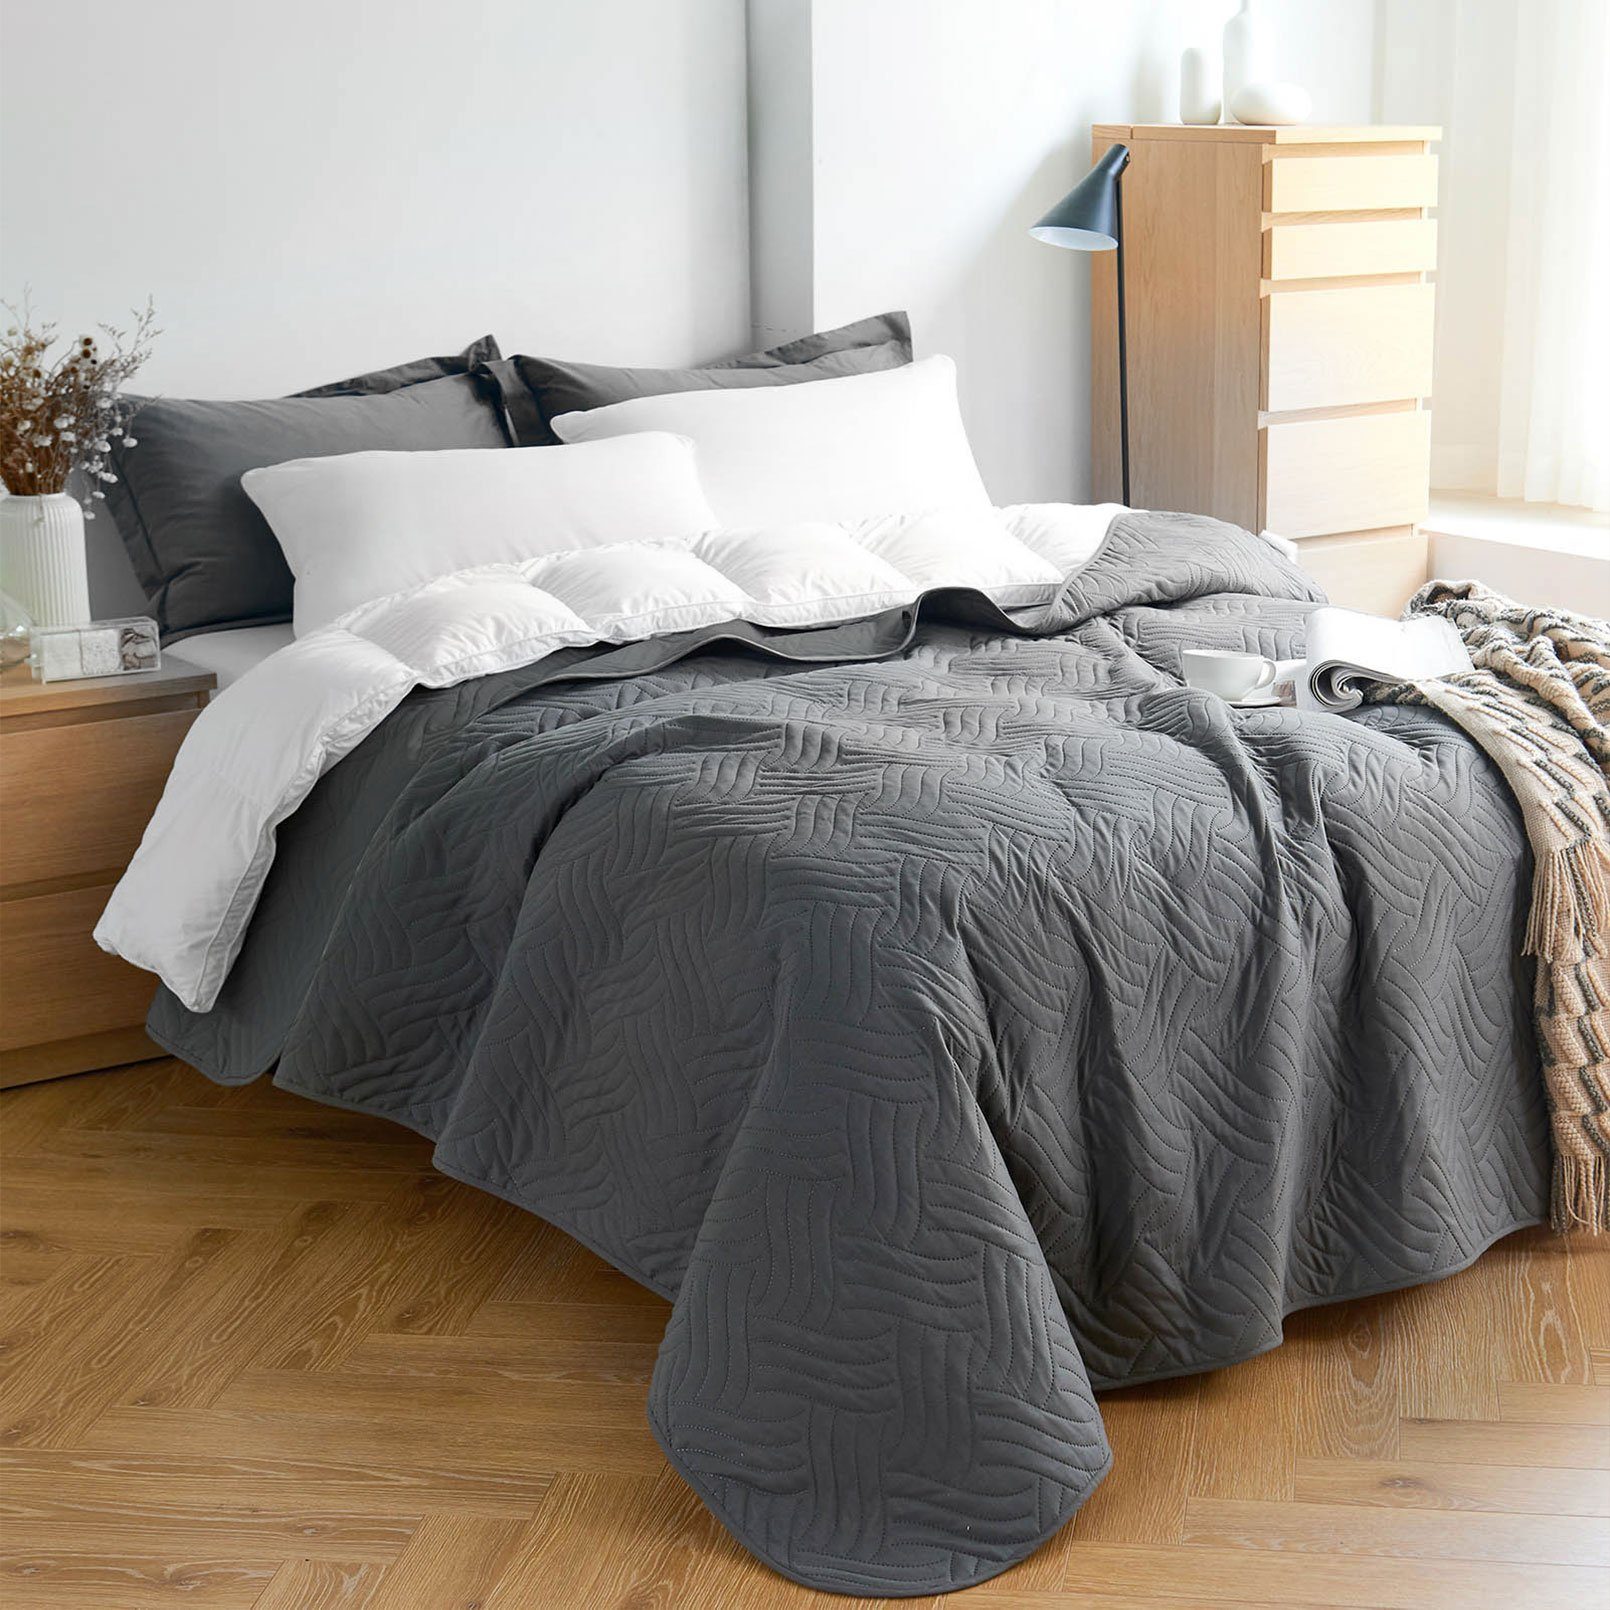 Tagesdecke TD, KEAYOO, aus 100% Doppelbetten für Einzelbetten Bettüberwurf oder Kunstfaser, DunkelgrauWelle